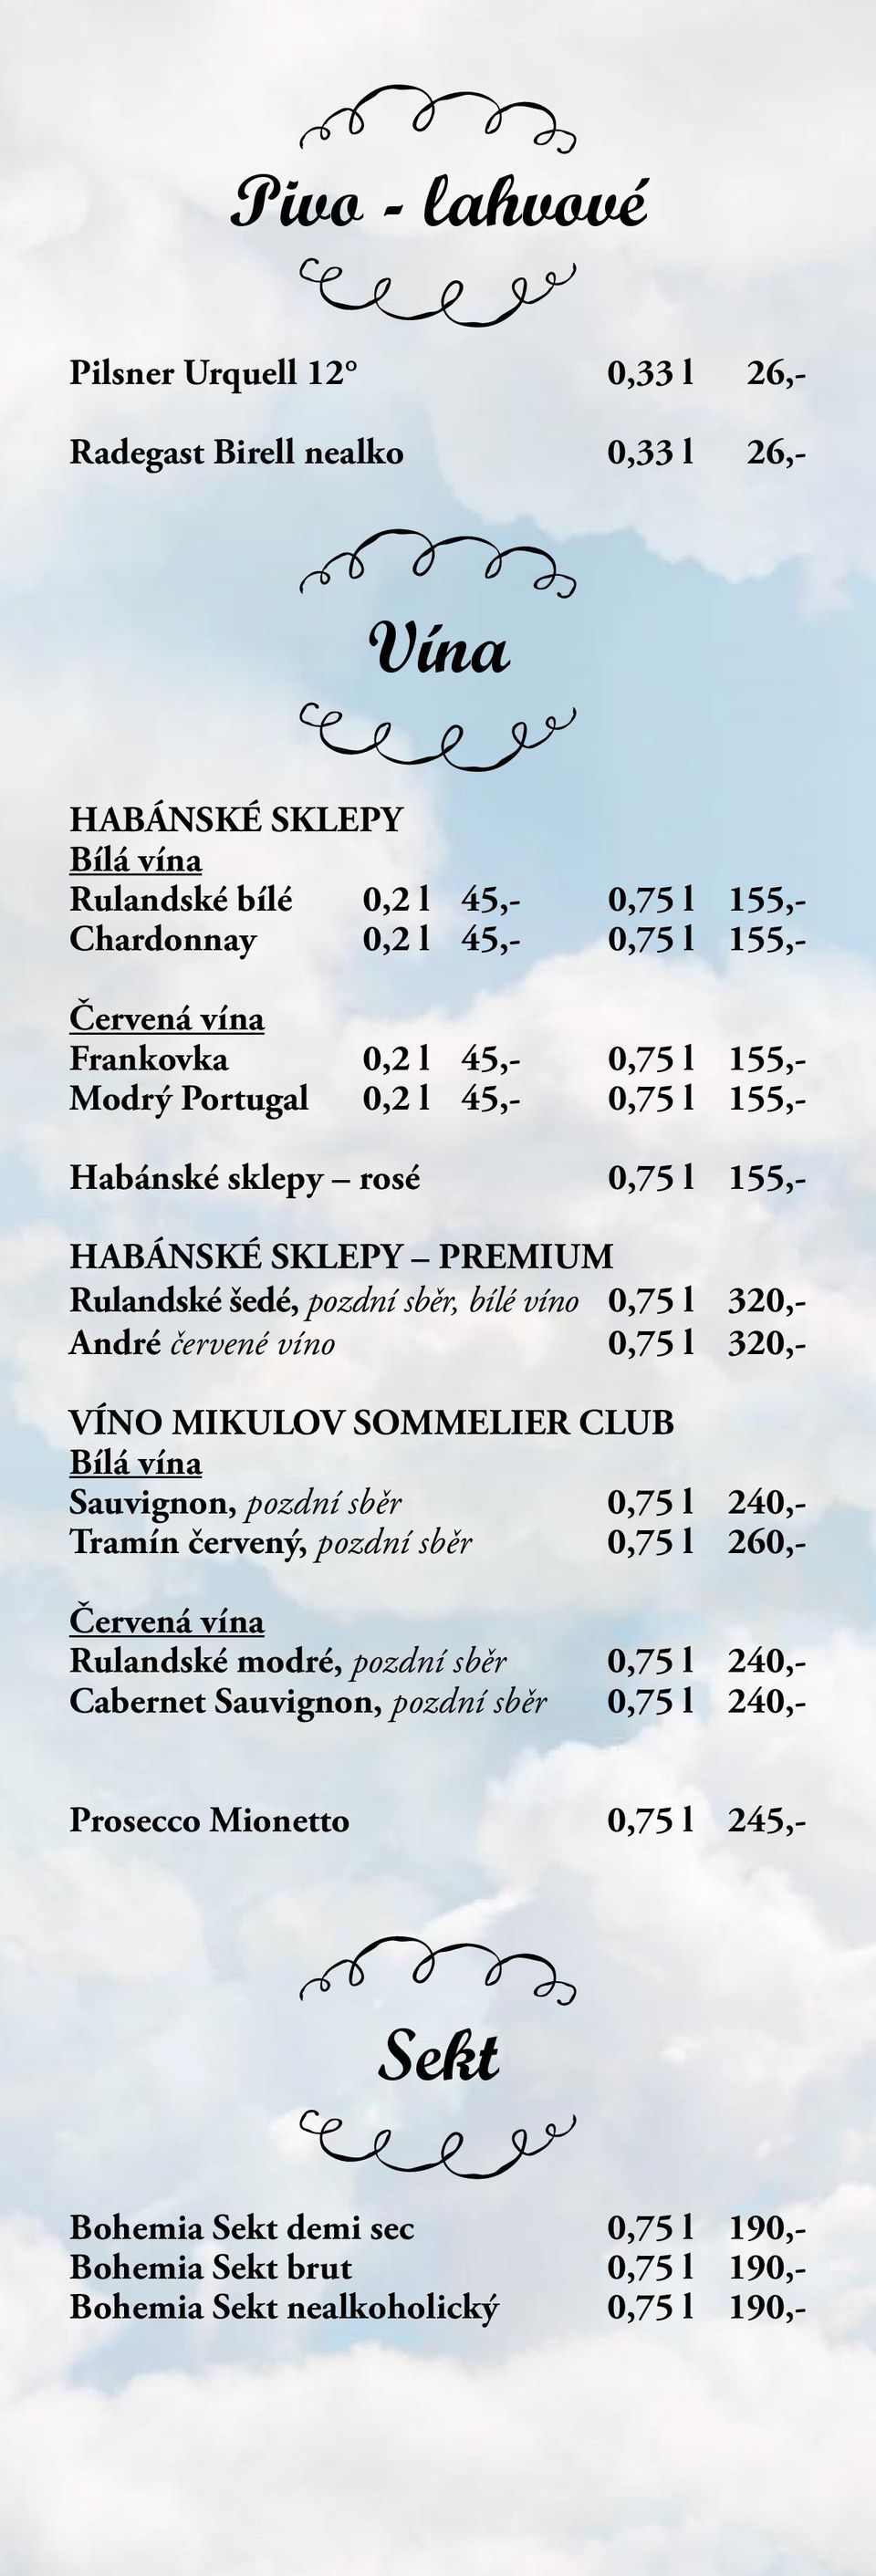 320,- André červené víno 0,75 l 320,- VÍNO MIKULOV SOMMELIER CLUB Bílá vína Sauvignon, pozdní sběr 0,75 l 240,- Tramín červený, pozdní sběr 0,75 l 260,- Červená vína Rulandské modré, pozdní